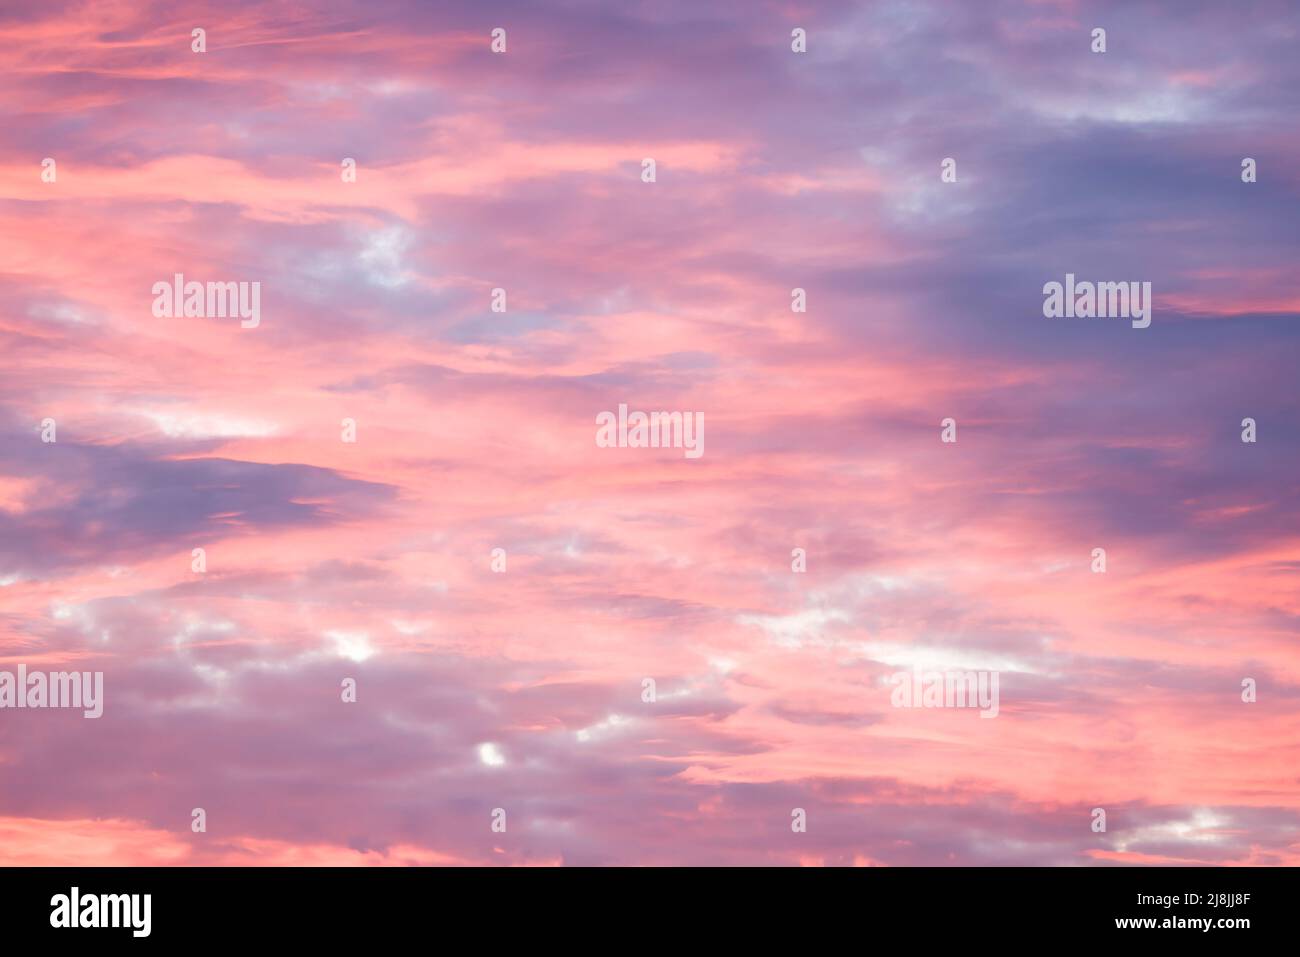 Spettacolare cielo rosso al tramonto con nuvole di tempesta rosa e blu. Motivo, struttura o sfondo di Skyscape, Regno Unito Foto Stock